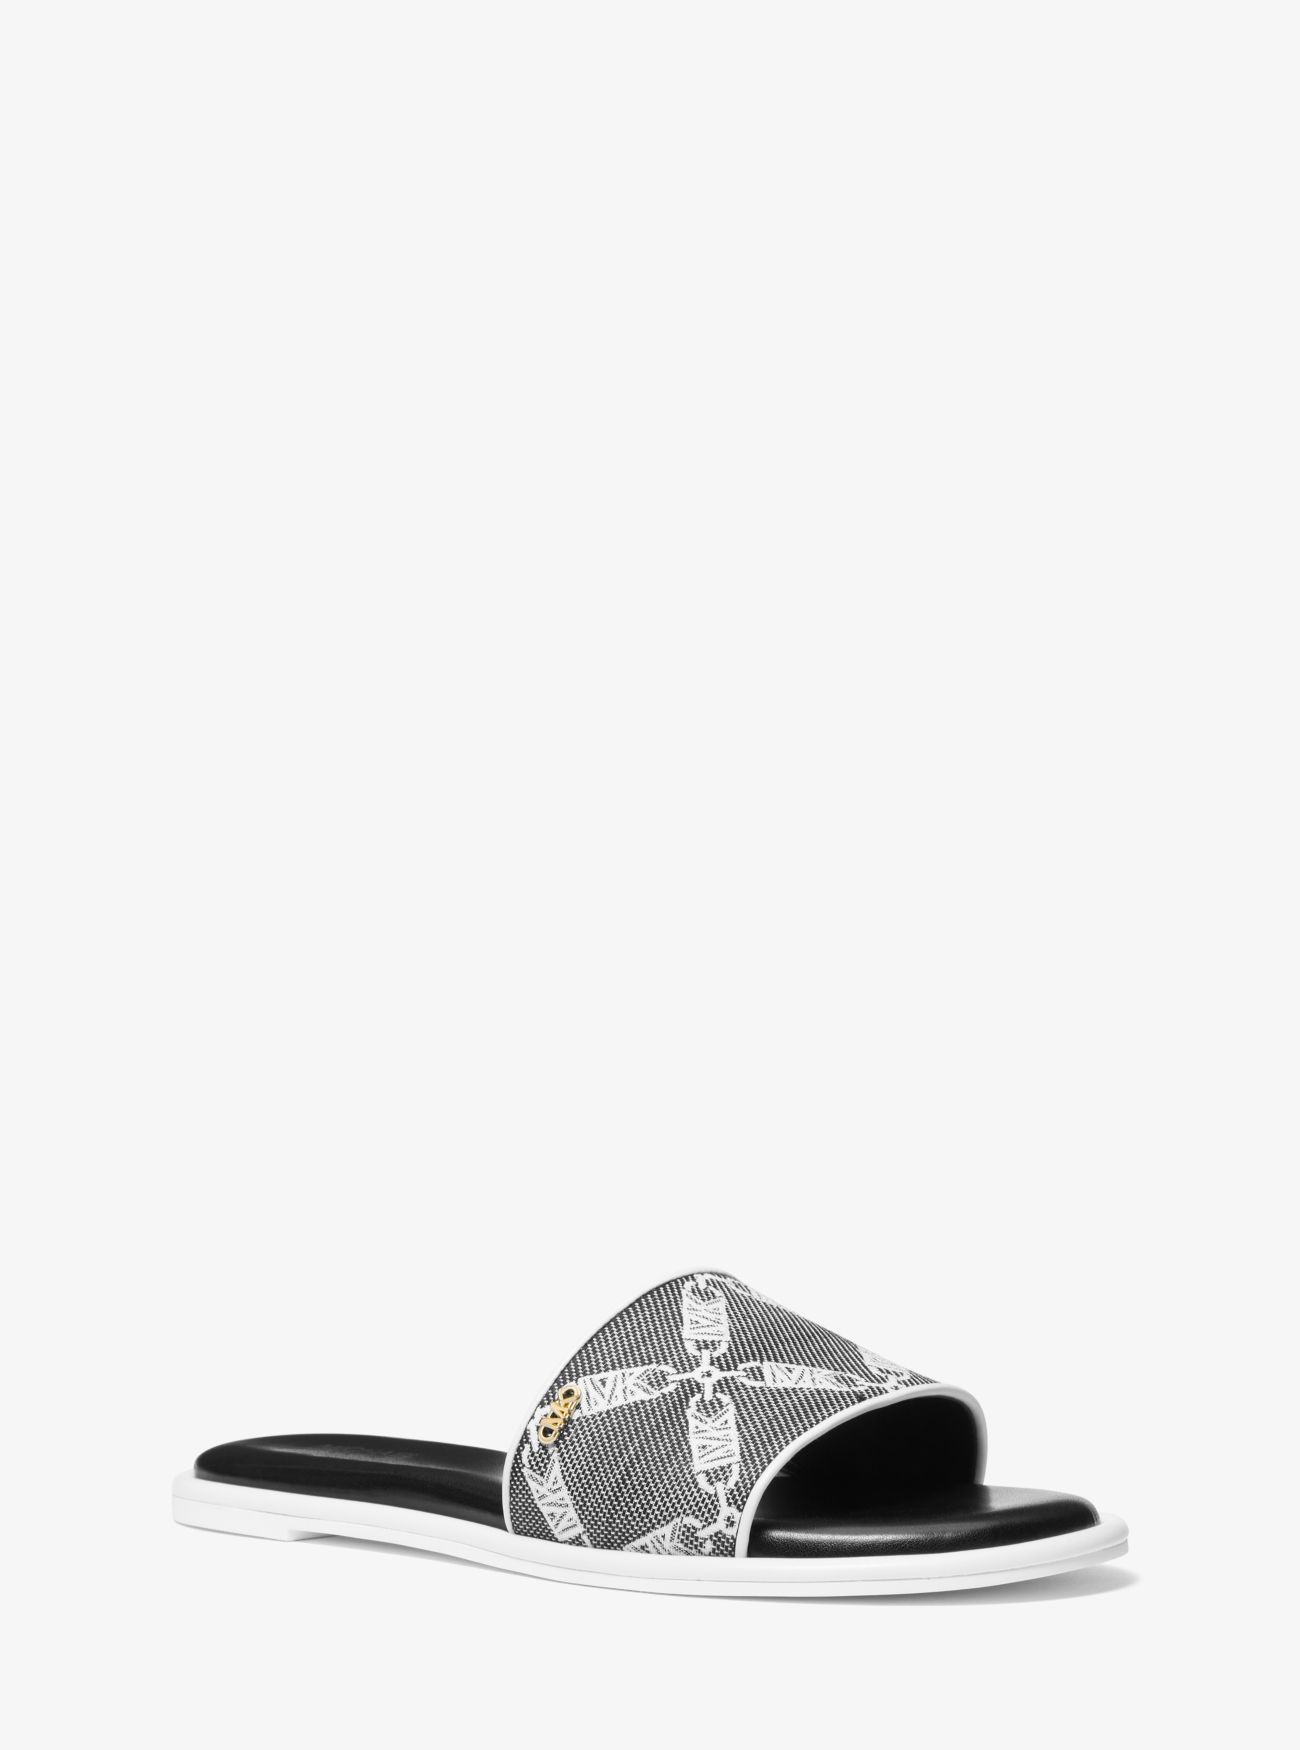 MK Saylor Empire Logo Jacquard Slide Sandal - Black/white - Michael Kors